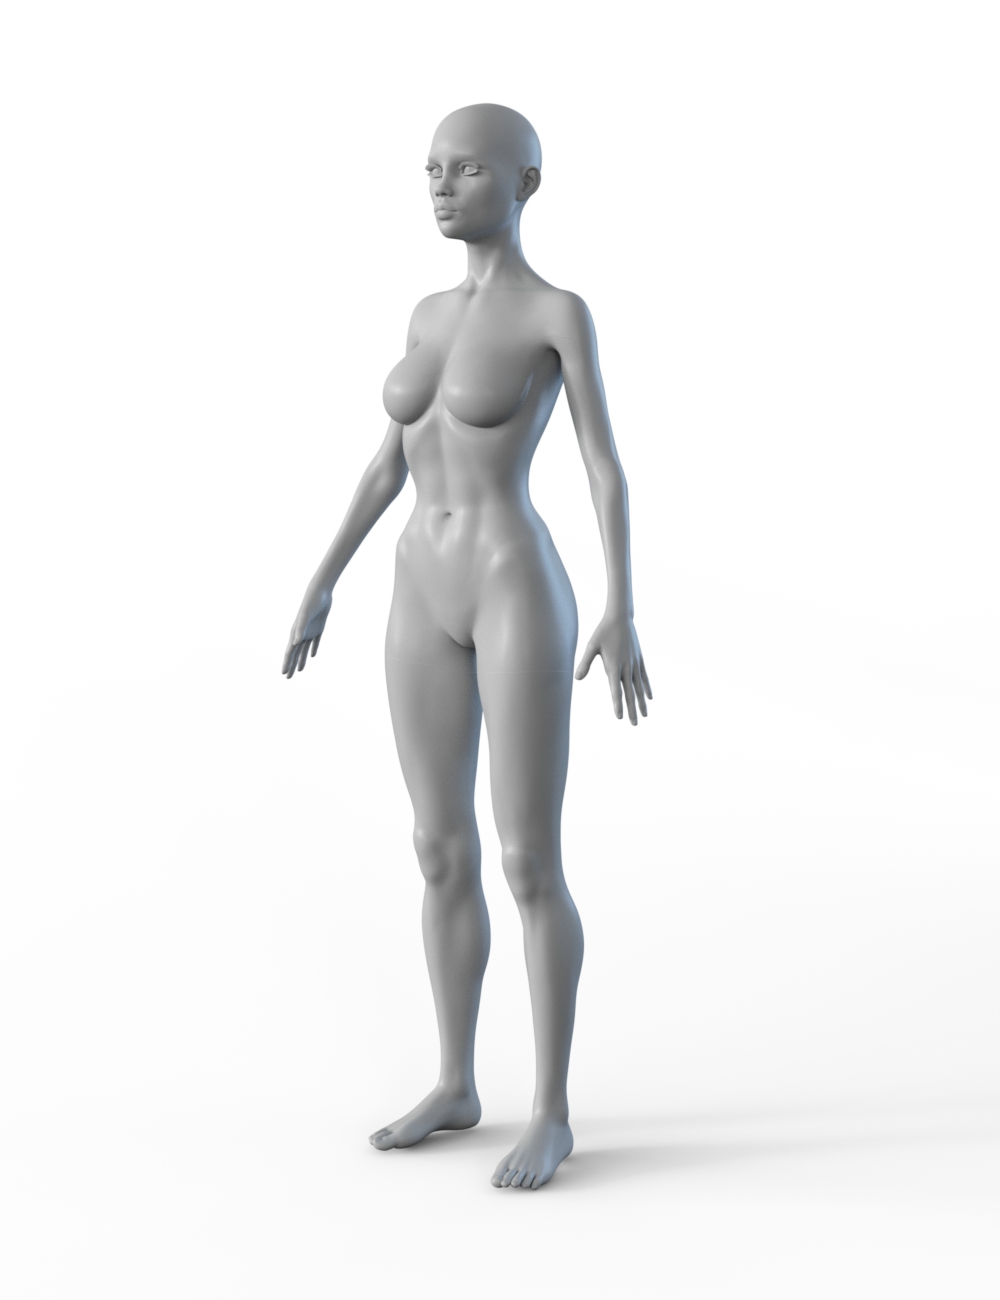 FBX- Lynsey Frosty Winter Outfit by: Paleo, 3D Models by Daz 3D